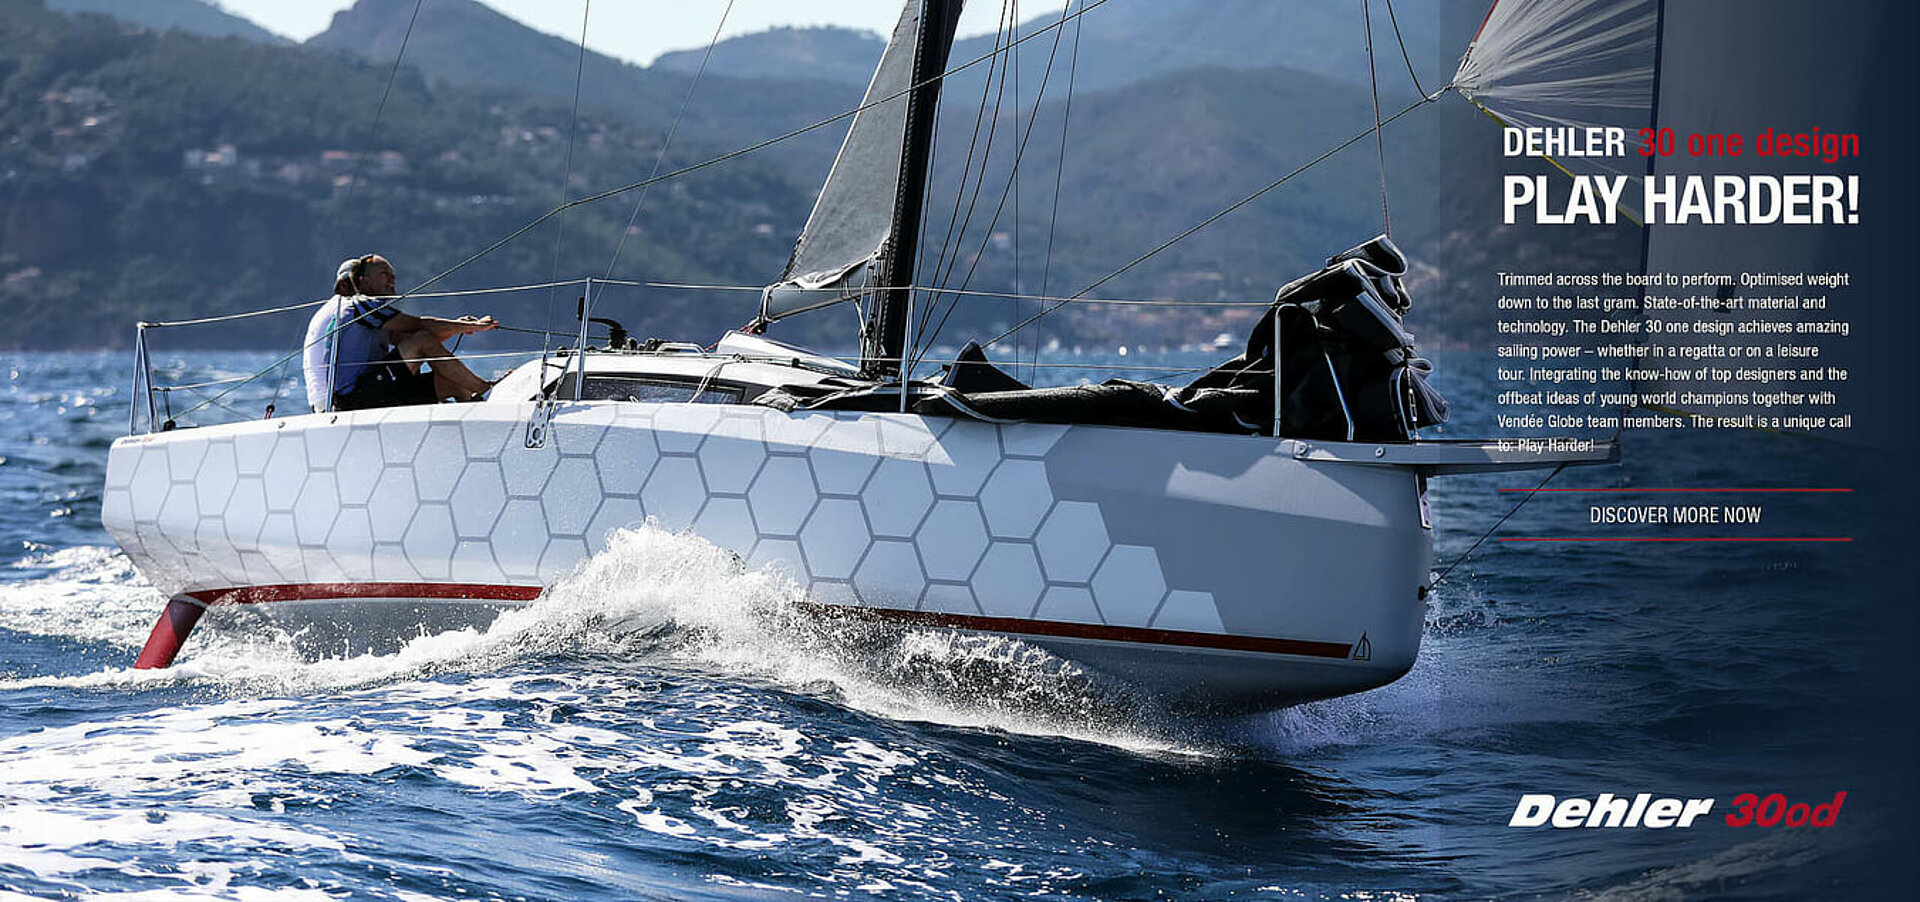 Dehler 30 one design velero de alto rendimiento hecho para las carreras de vela